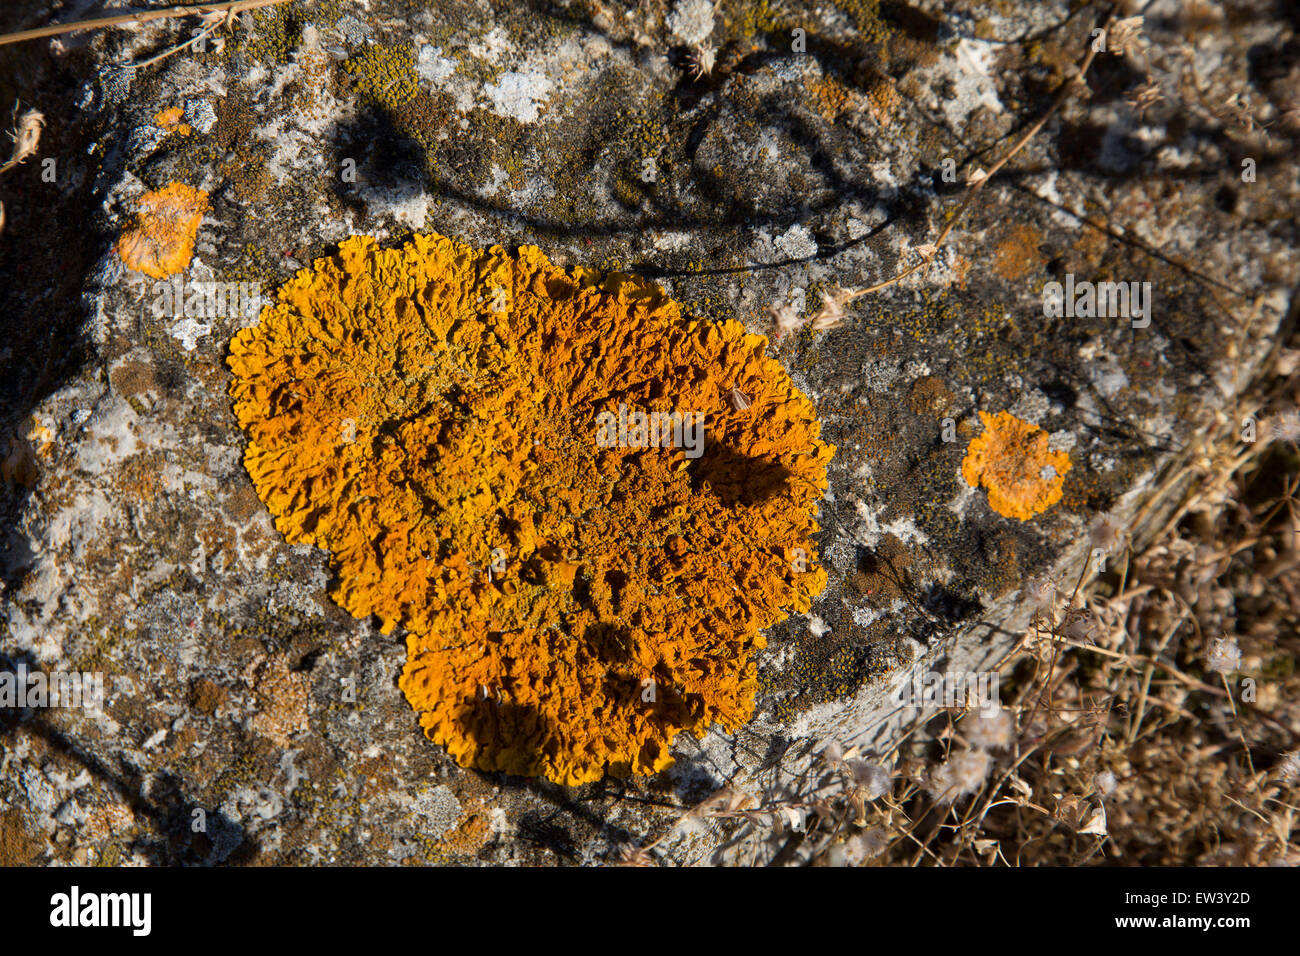 Orange Flechten auf einem Felsen in Gruissan, Languedoc-Roussillon, Frankreich. Eine Flechte ist eine zusammengesetzte Organismus, der ergibt sich aus Algen oder Cyanobakterien (oder beides) Leben unter Filamente eines Pilzes in einer für beide Seiten vorteilhafte Beziehung (Symbiotoc-Beziehung). Die gesamte kombinierte Lebensform hat Eigenschaften, die Eigenschaften der Komponente Organismen sehr unterschiedlich sind. Flechten sind in vielen Farben, Größen und Formen. Die Eigenschaften sind manchmal pflanzenähnliche, sondern Flechten sind keine Pflanzen. Stockfoto